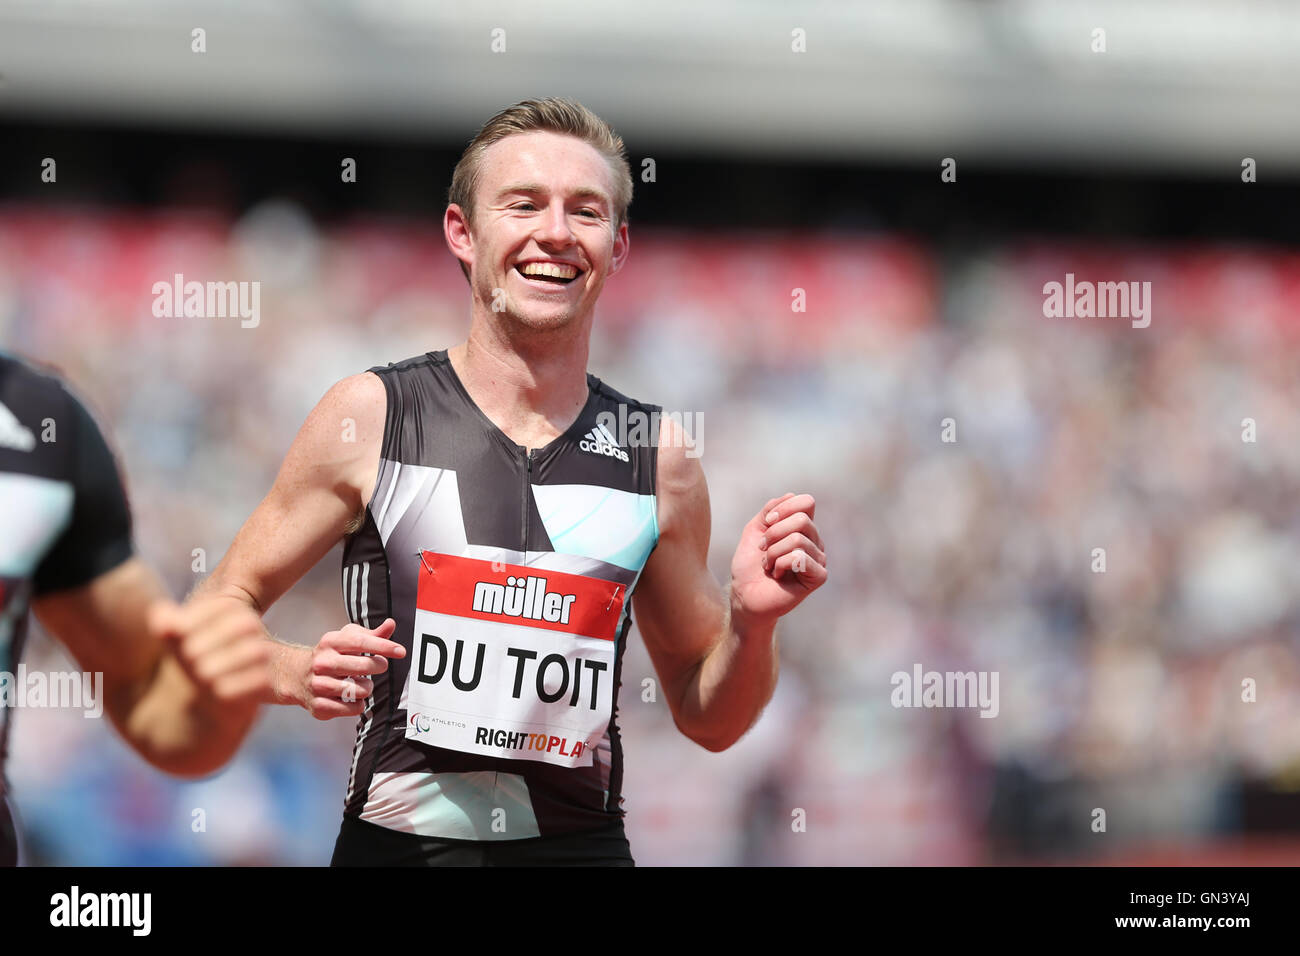 Charl du TOIT laufen in den Männern T37 100m bei der IPC Jubiläumsspiele, Queen Elizabeth Olympic Park, Stratford, London, UK. Stockfoto